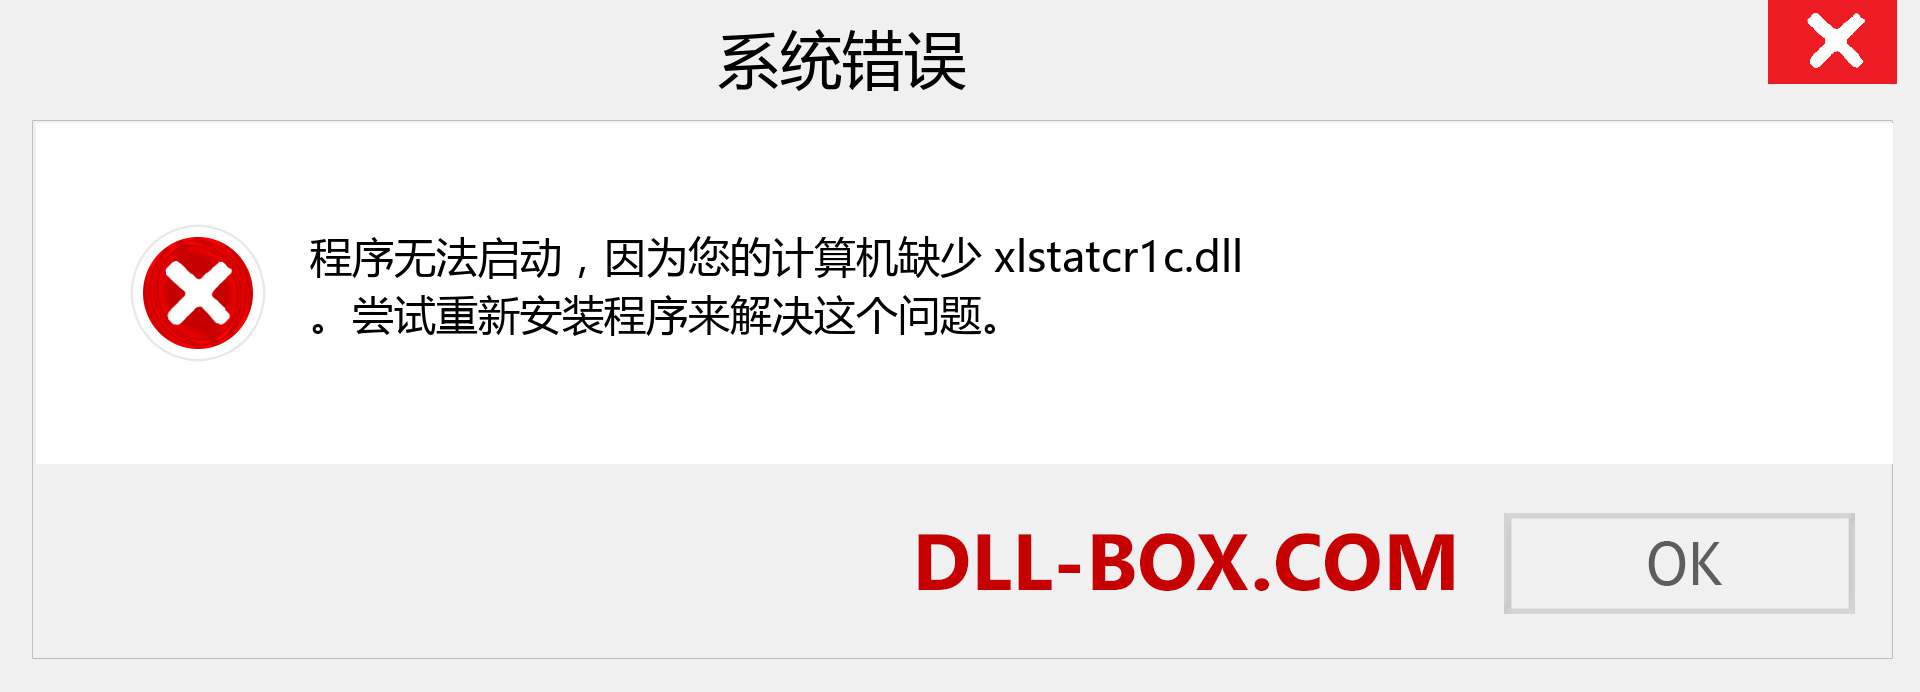 xlstatcr1c.dll 文件丢失？。 适用于 Windows 7、8、10 的下载 - 修复 Windows、照片、图像上的 xlstatcr1c dll 丢失错误